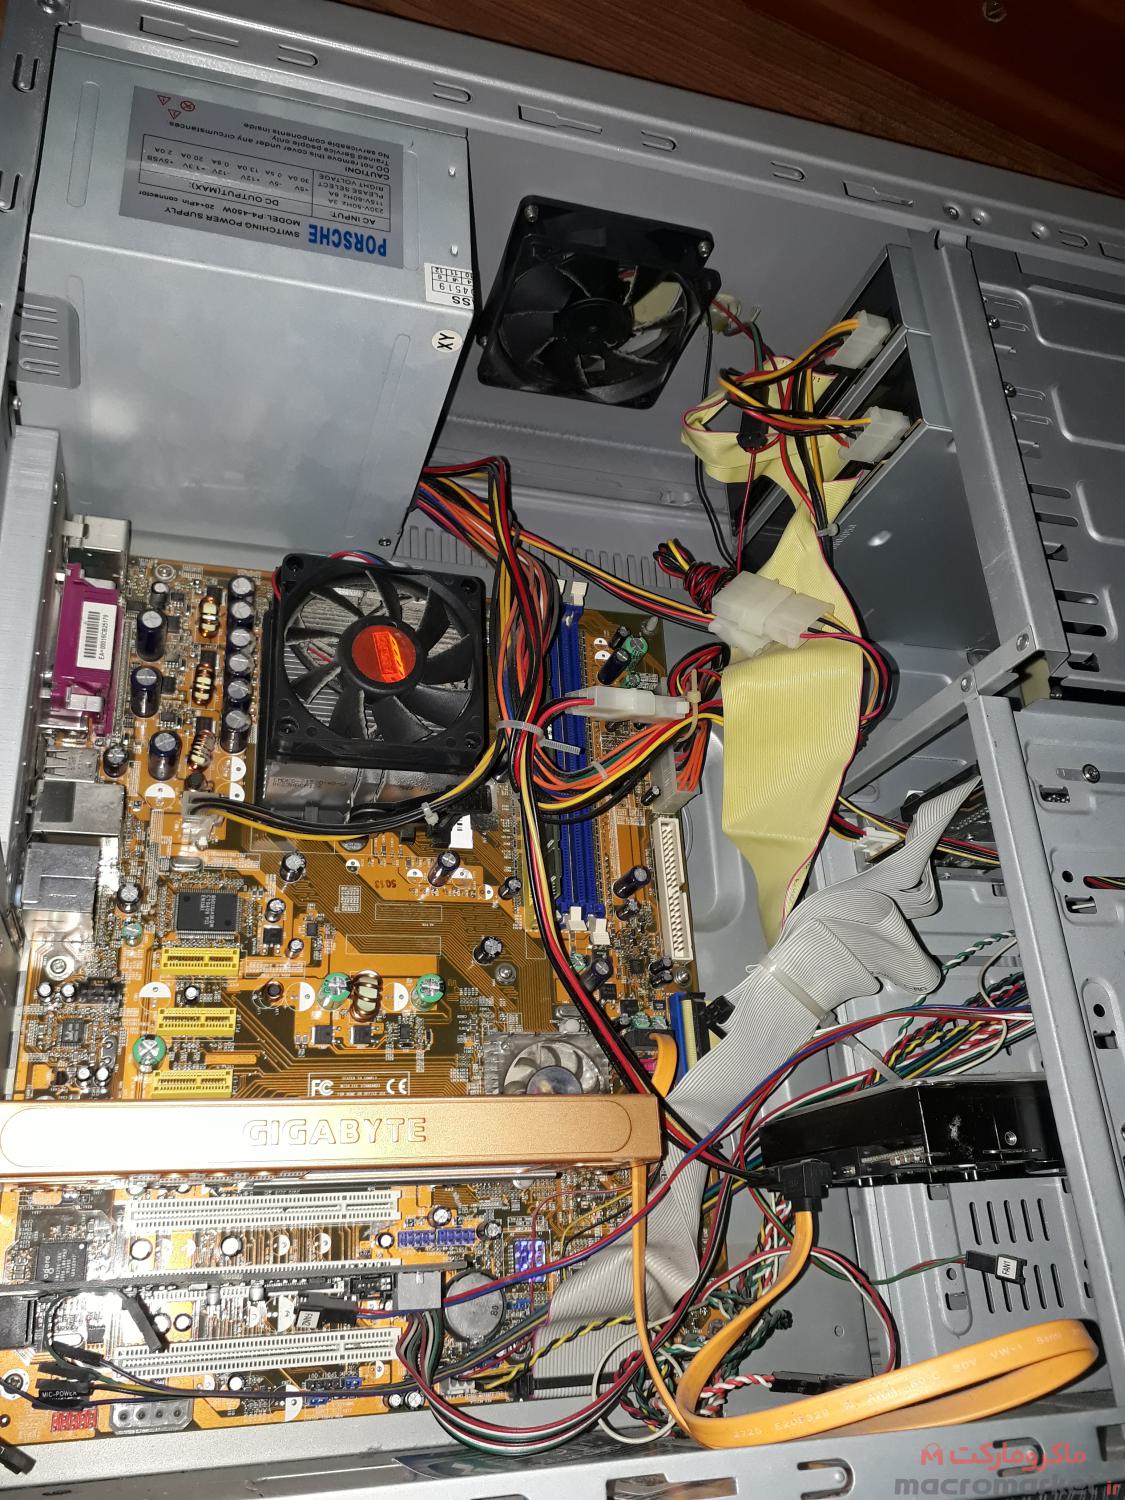 سیستم رومیزی مانیتور LG کیس کیبورد  - سی پی یو AMD  هارد 80 گیگ  کارت گرافیک 256 مگ  مانیتور الجی LCD L-1520-B